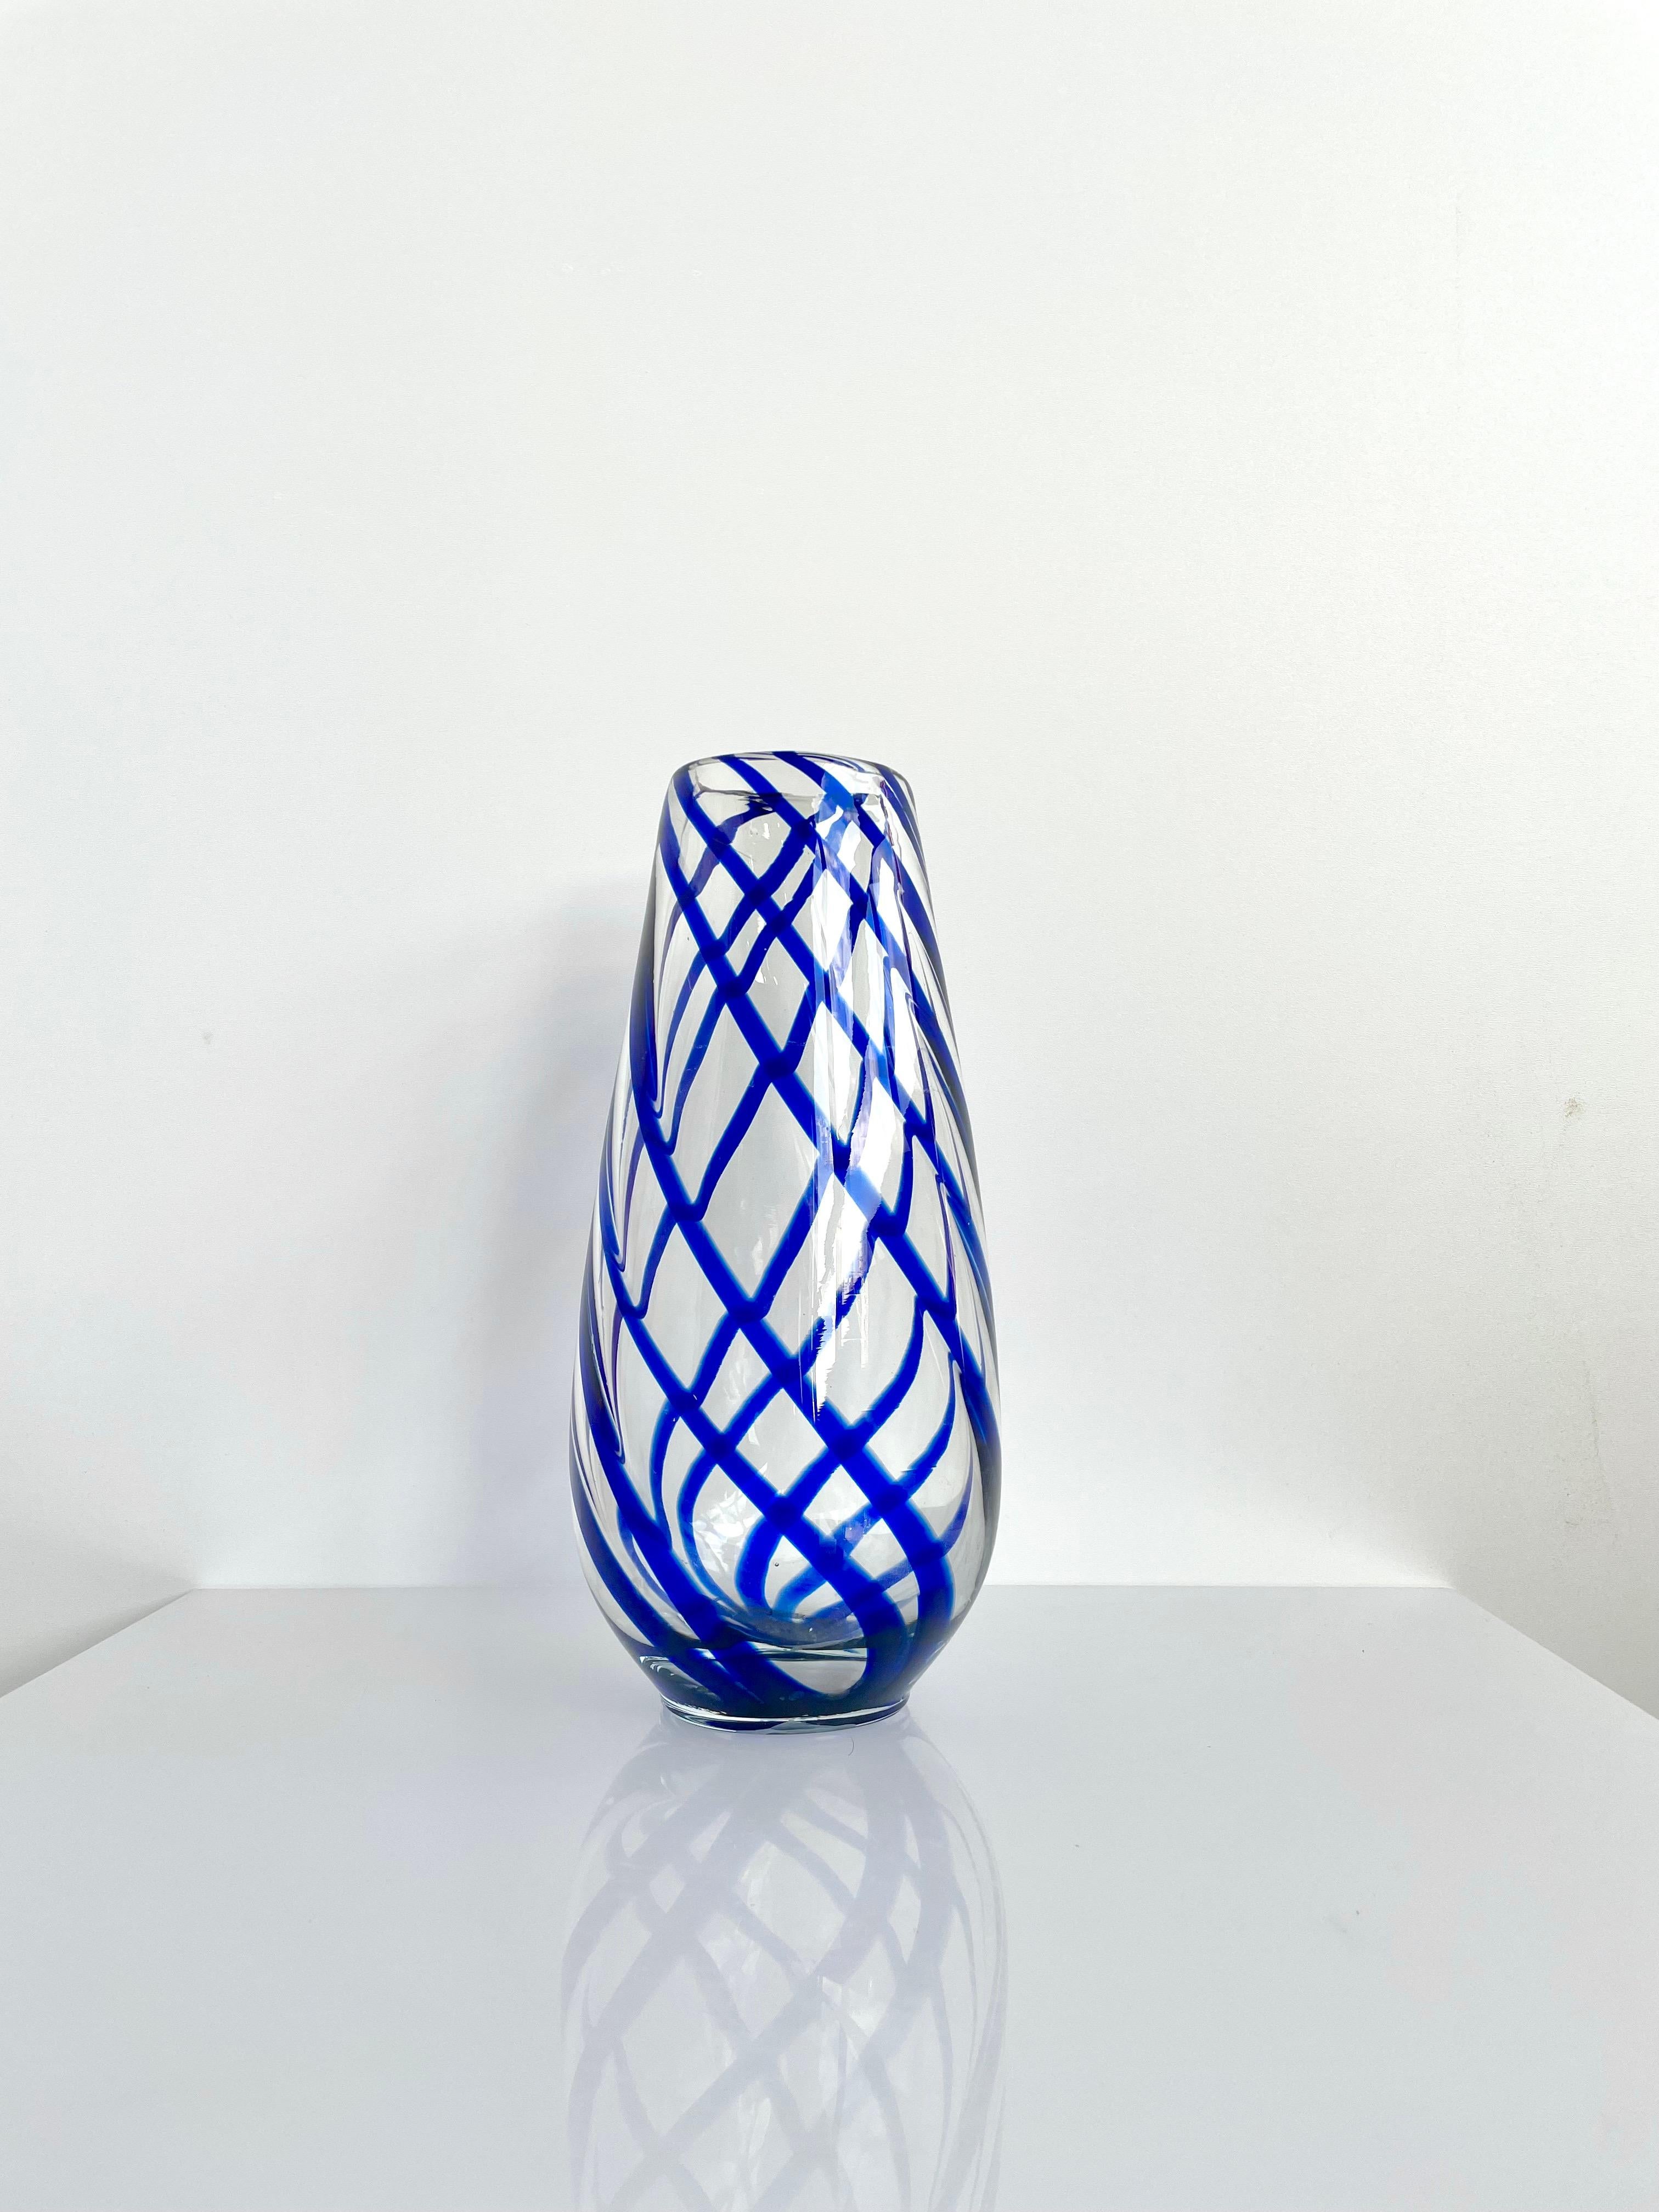 Vase en verre de Murano des années 1960. Tourbillons de couleur bleue dans un verre transparent (fait à la main). A utiliser comme objet décoratif ou comme récipient fonctionnel pour contenir des fleurs ou d'autres éléments décoratifs. 